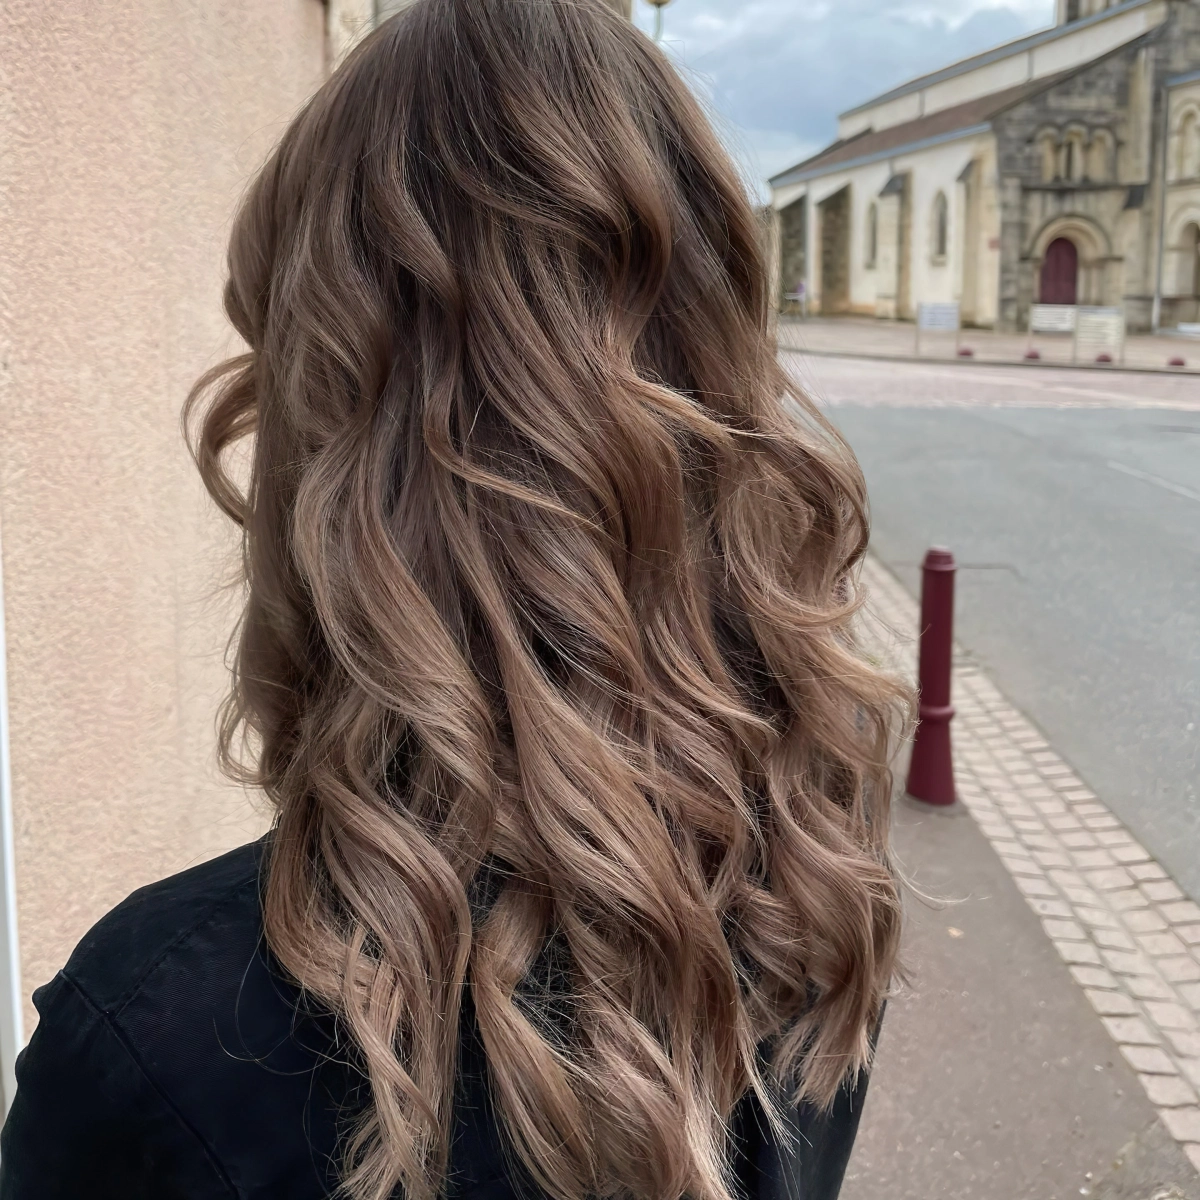 rue batiment femme coiffure cheveux coloration tendance racines foncees